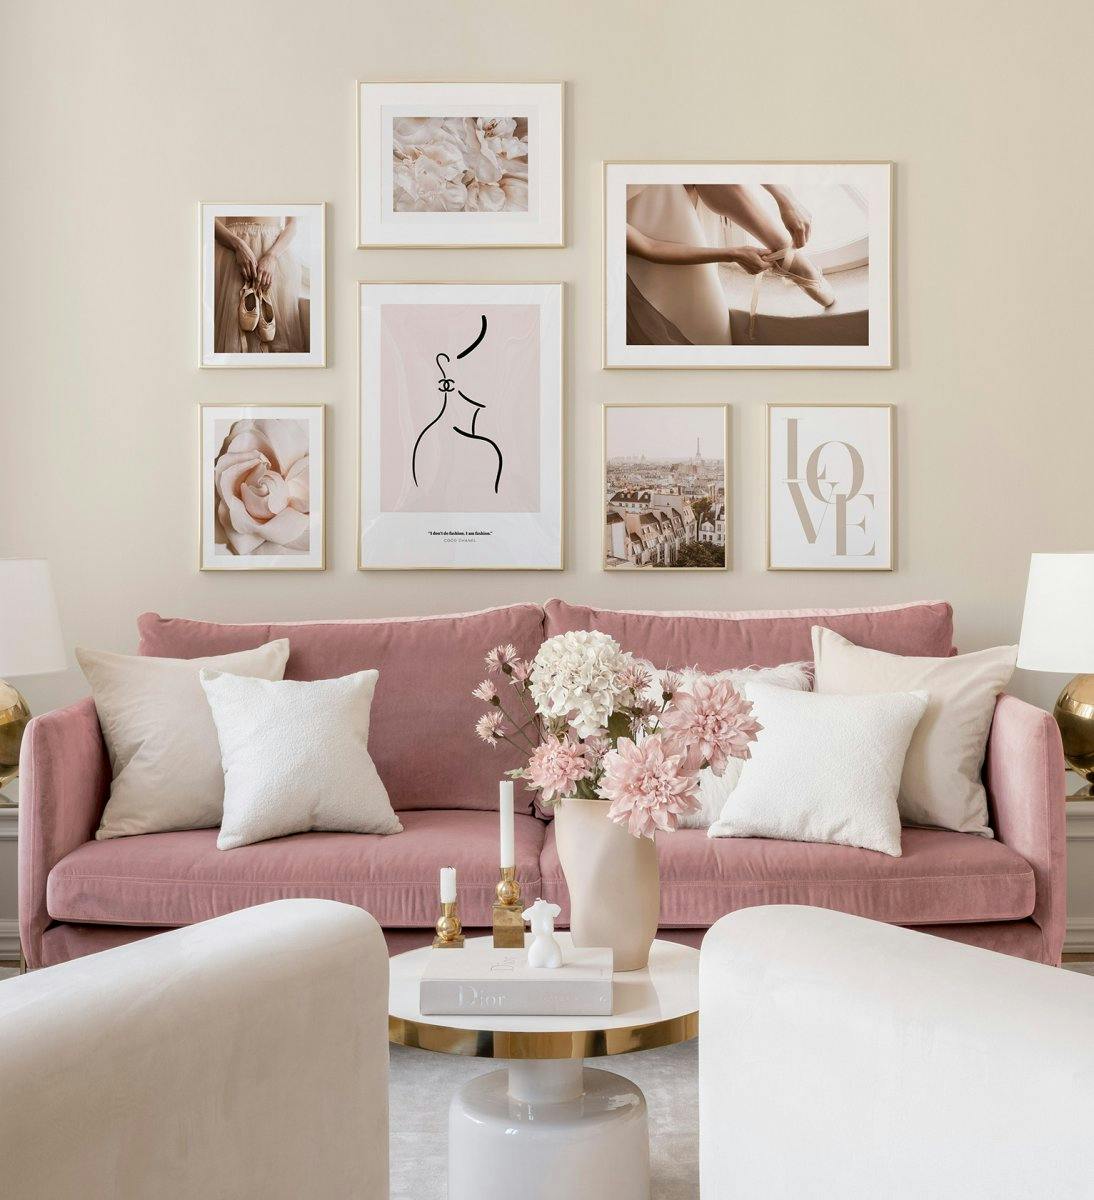 황금색 프레임 안에 핑크 톤의 거실을 위한 세련된 갤러리월.